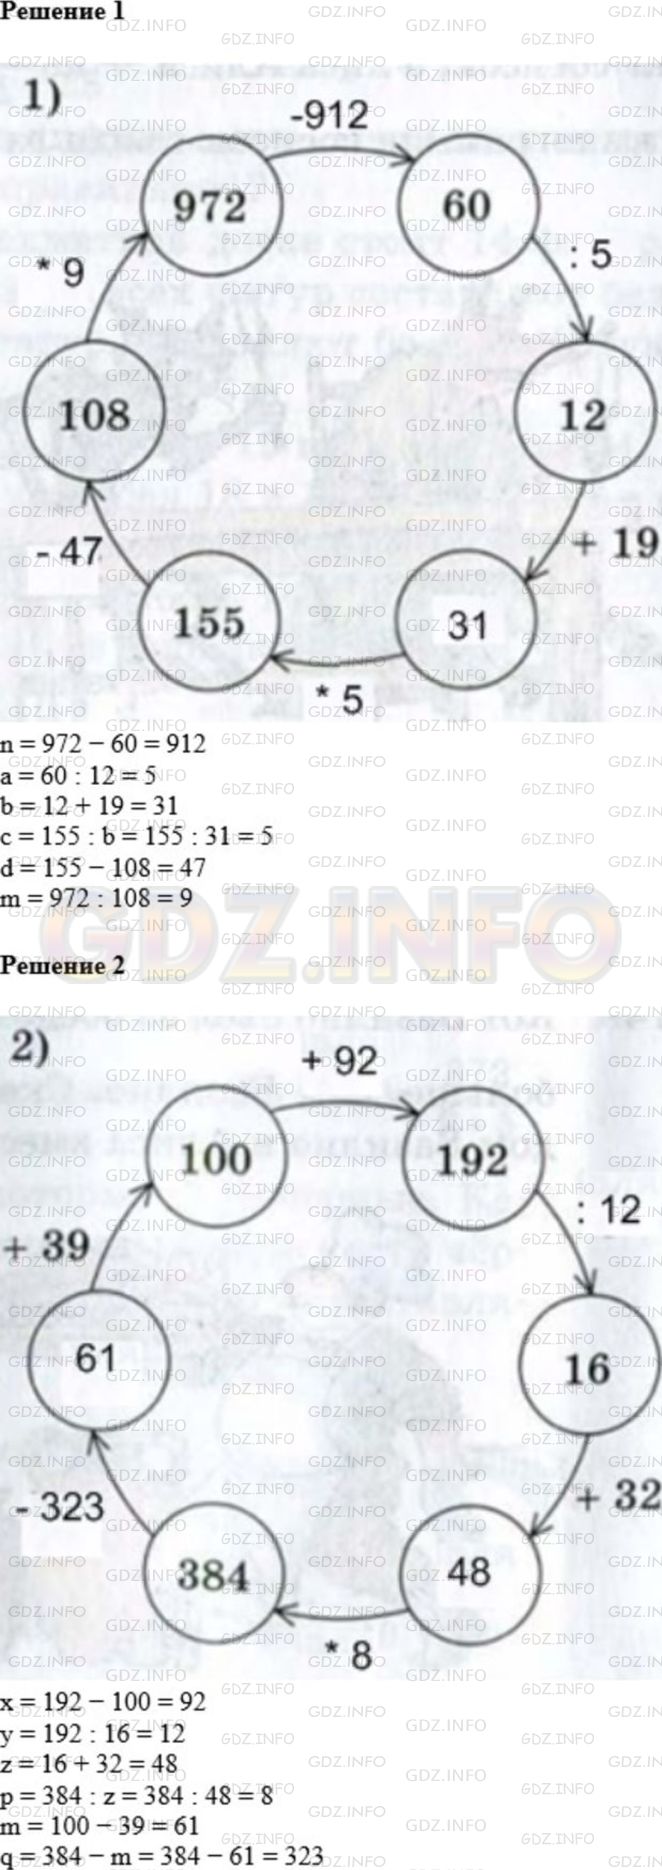 Фото ответа 1 на Задание 755 из ГДЗ по Математике за 5 класс: А.Г. Мерзляк, В.Б. Полонский, М.С. Якир. 2014г.